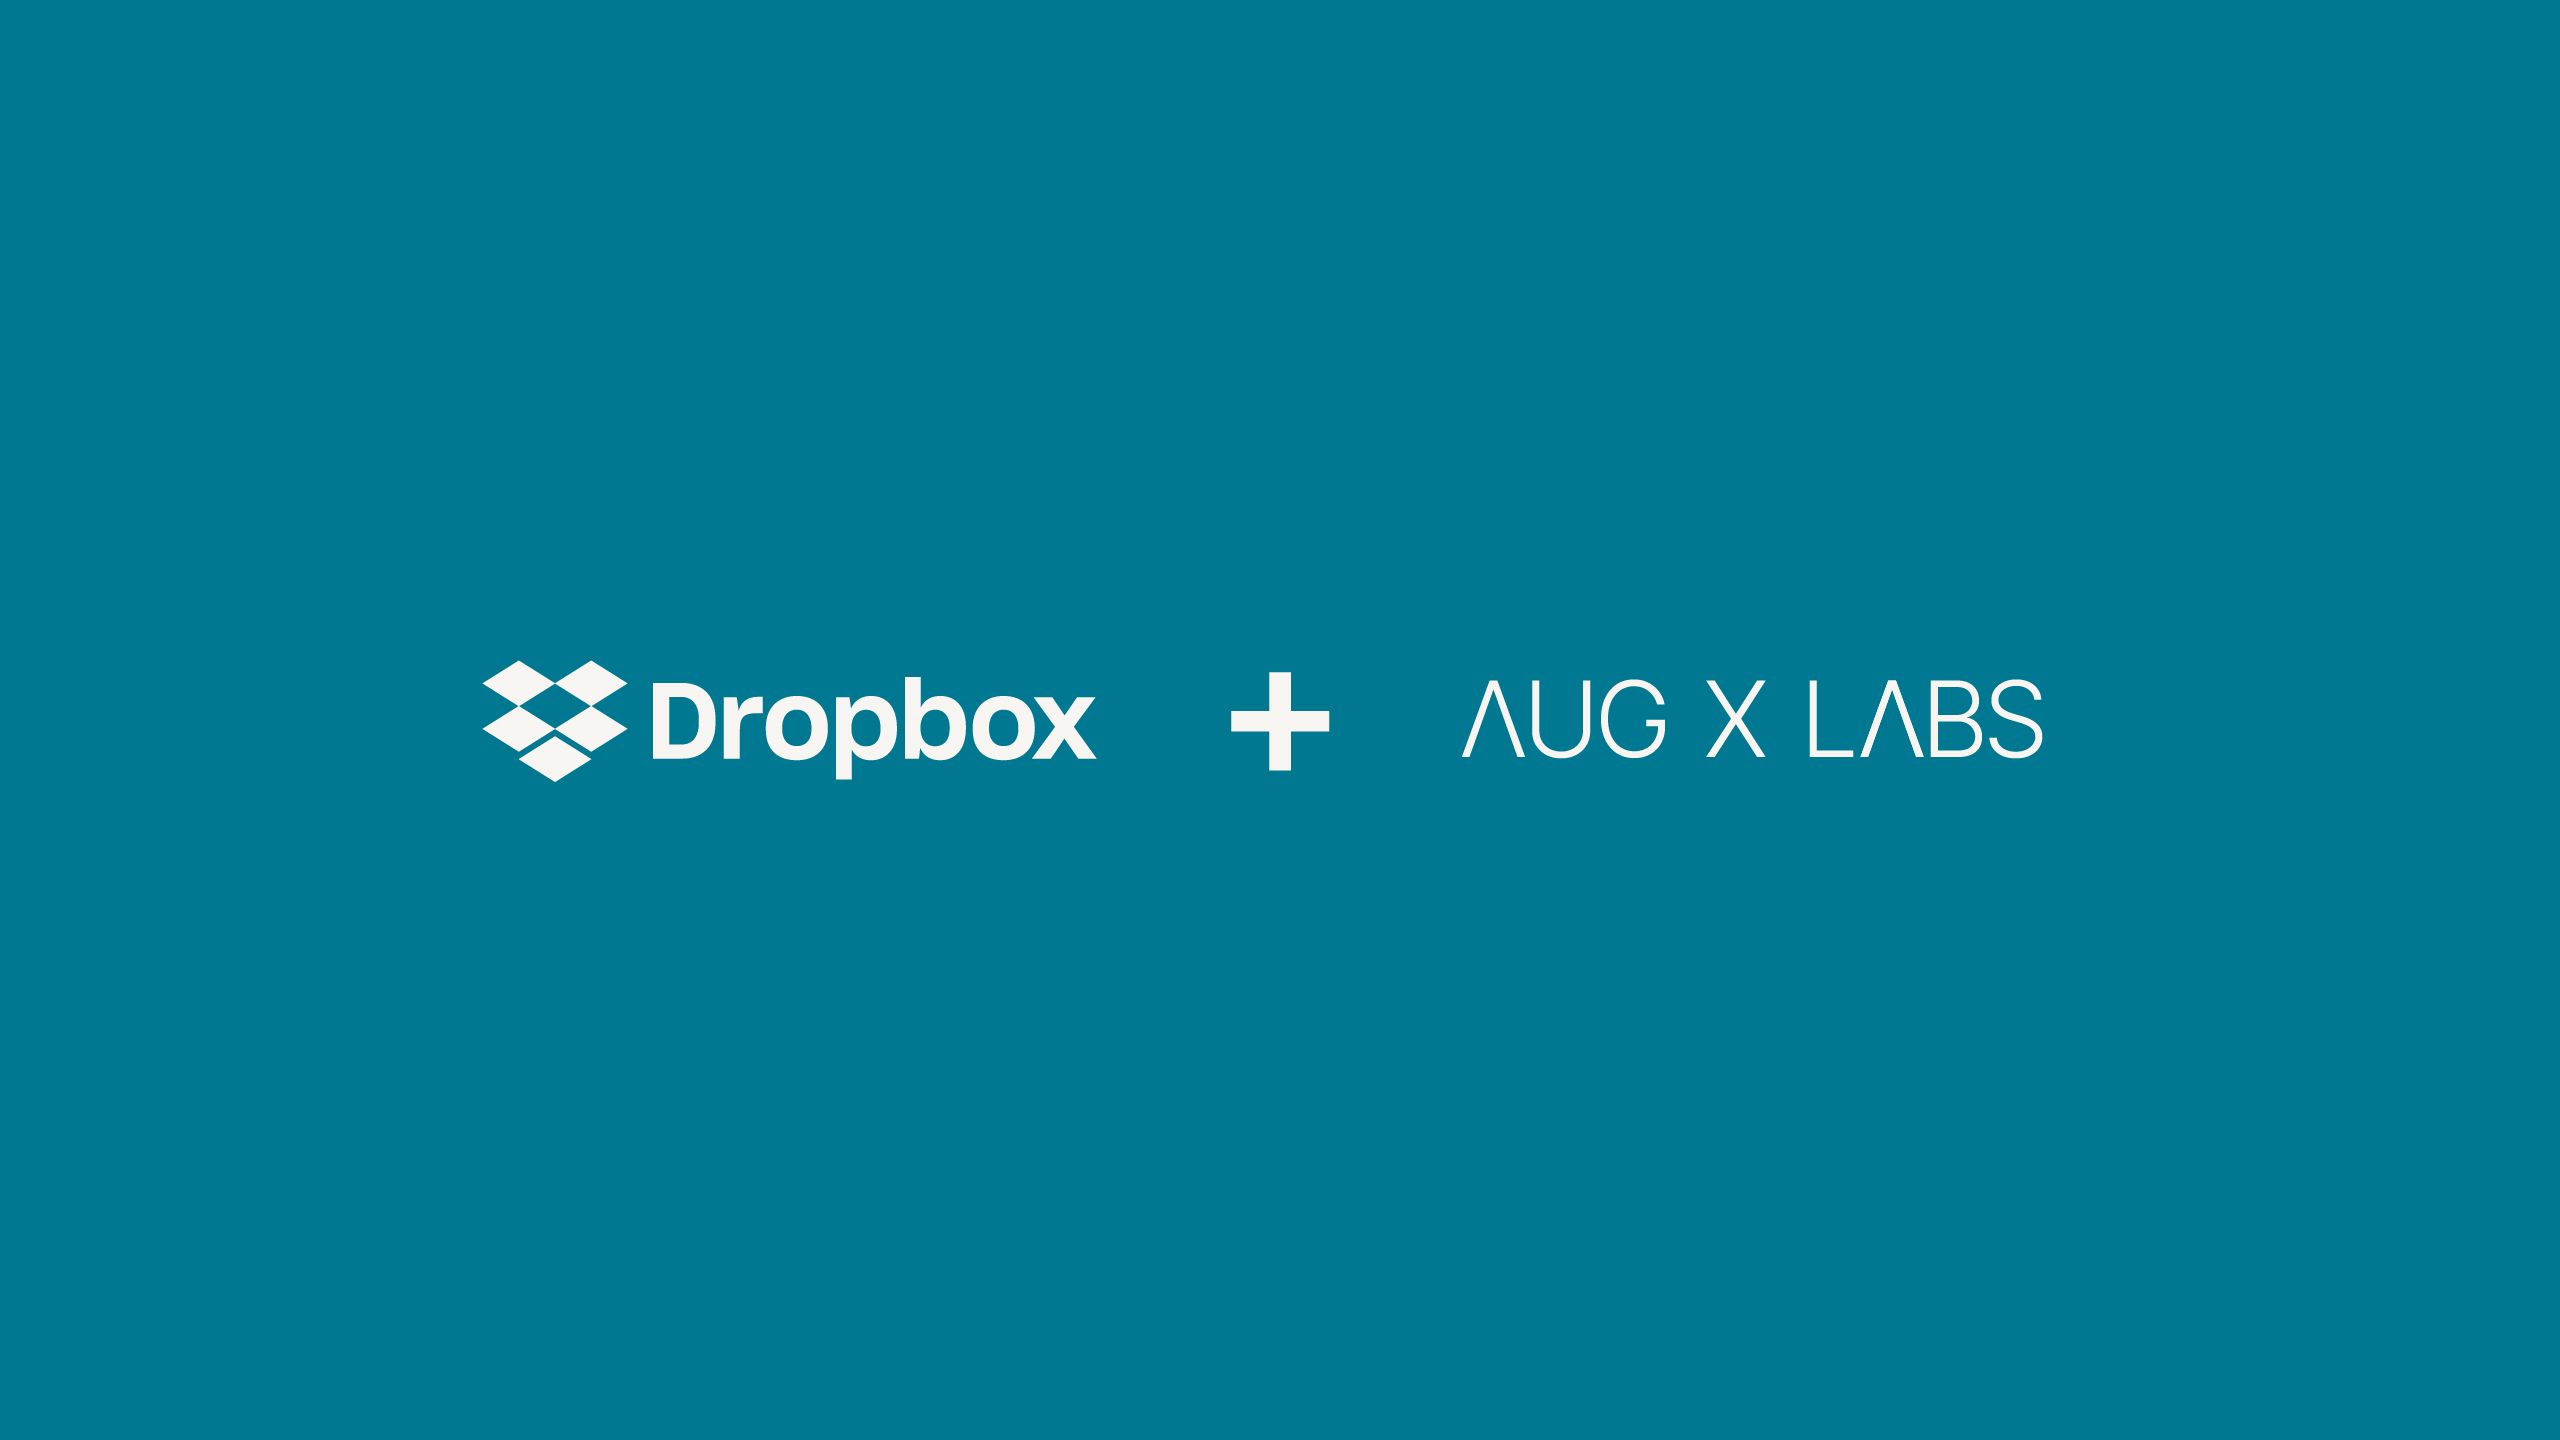 Logo für die Partnerschaft zwischen Dropbox und AugX Labs  